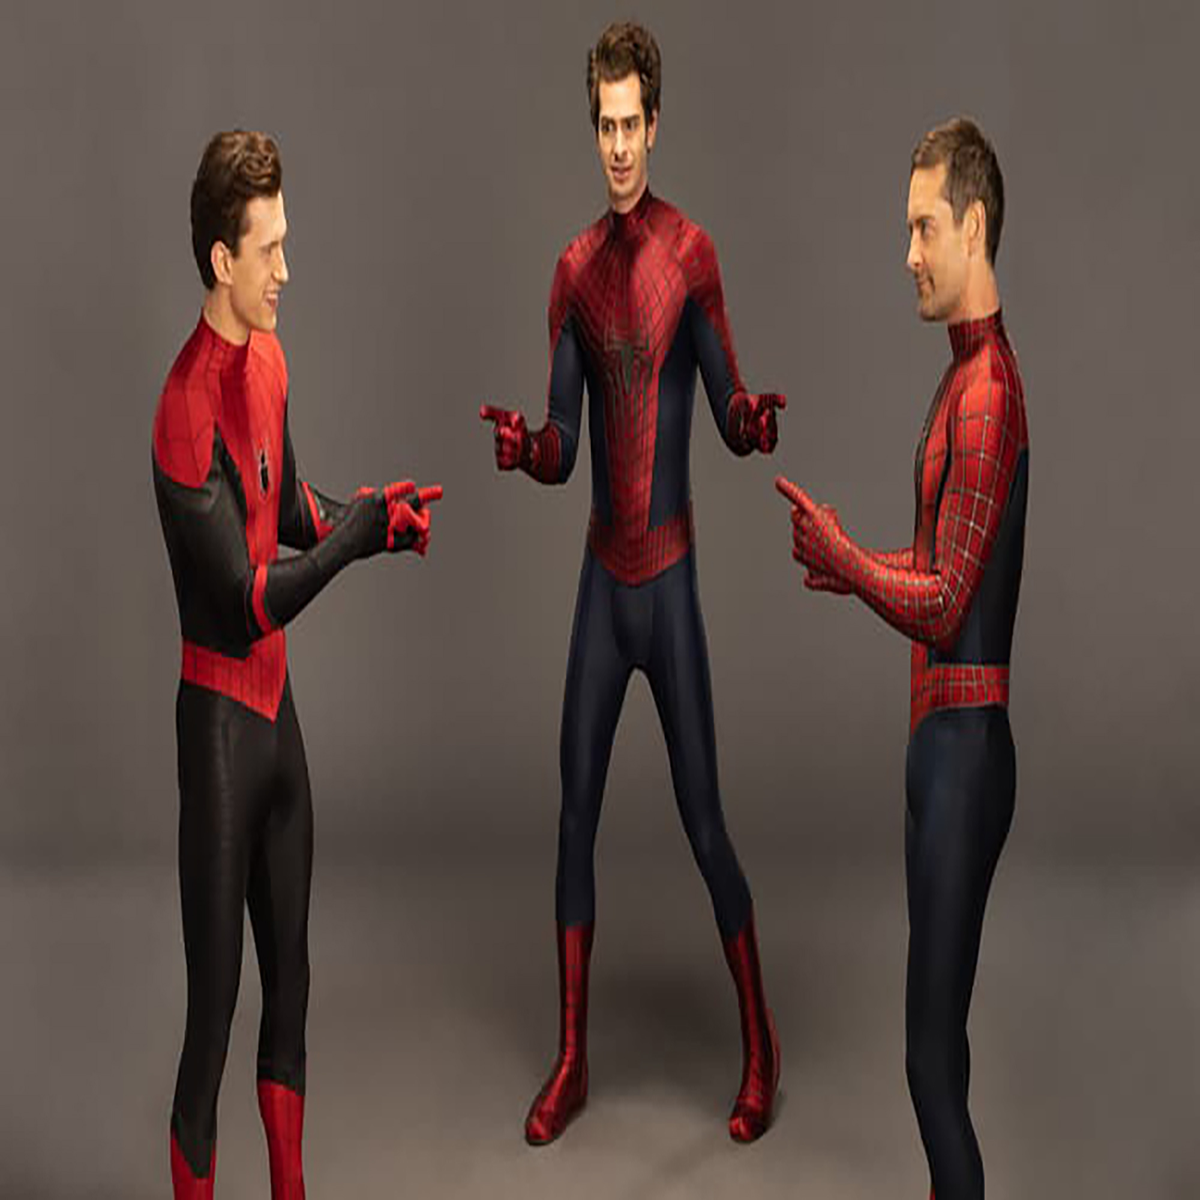 breakingnews 🕷 Los miembros del elenco de 'SPIDER-MAN y THE AMAZING SPIDER- MAN' que regresan en SPIDER-MAN 3 solo tendrán roles de CAMEO …